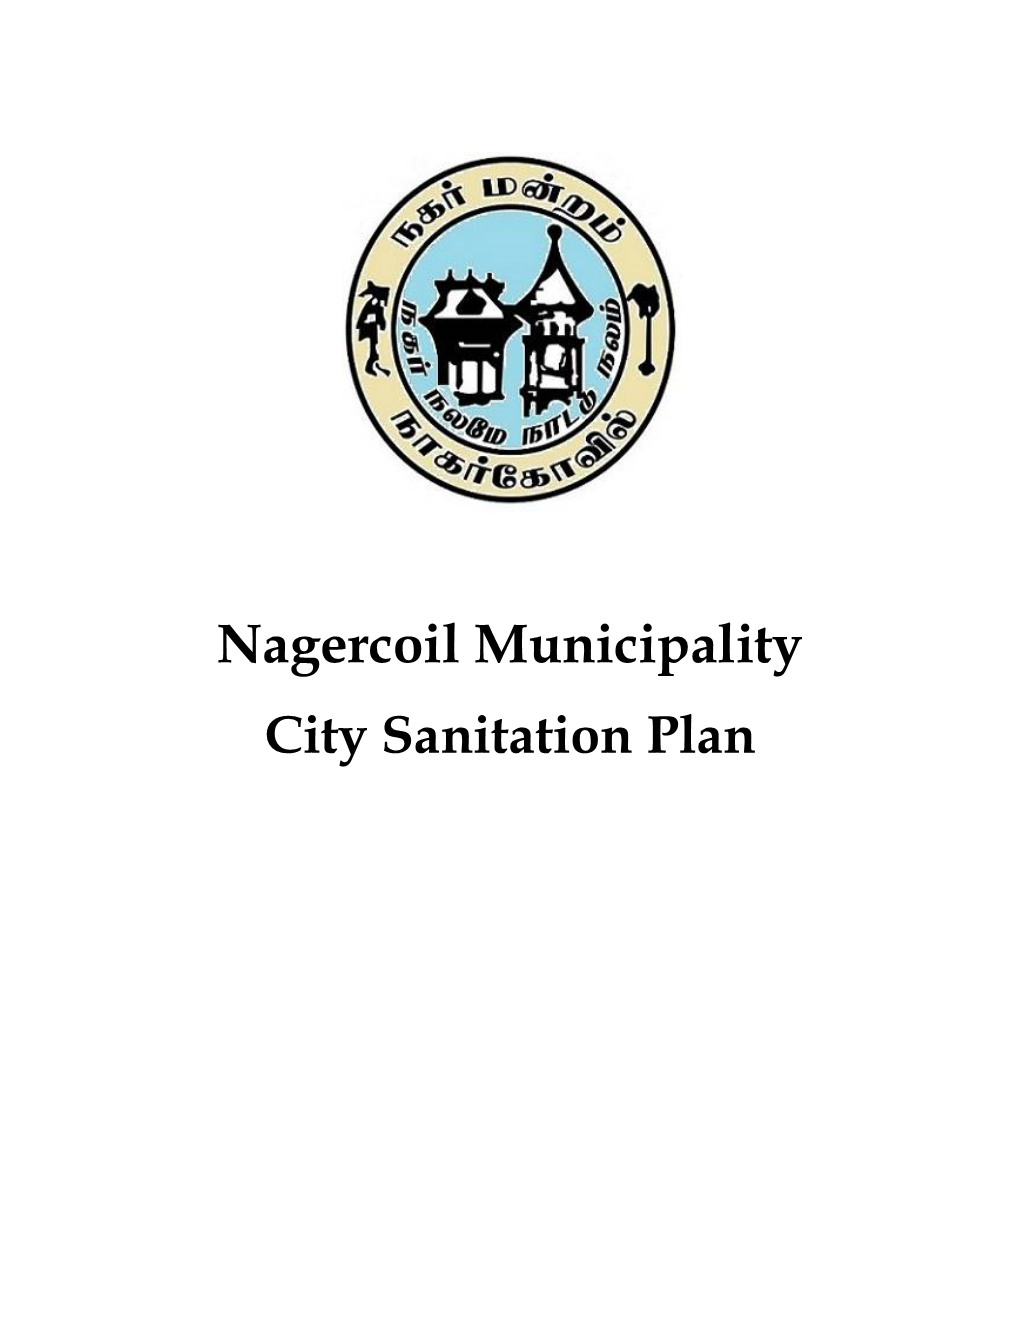 Nagercoil Municipality City Sanitation Plan